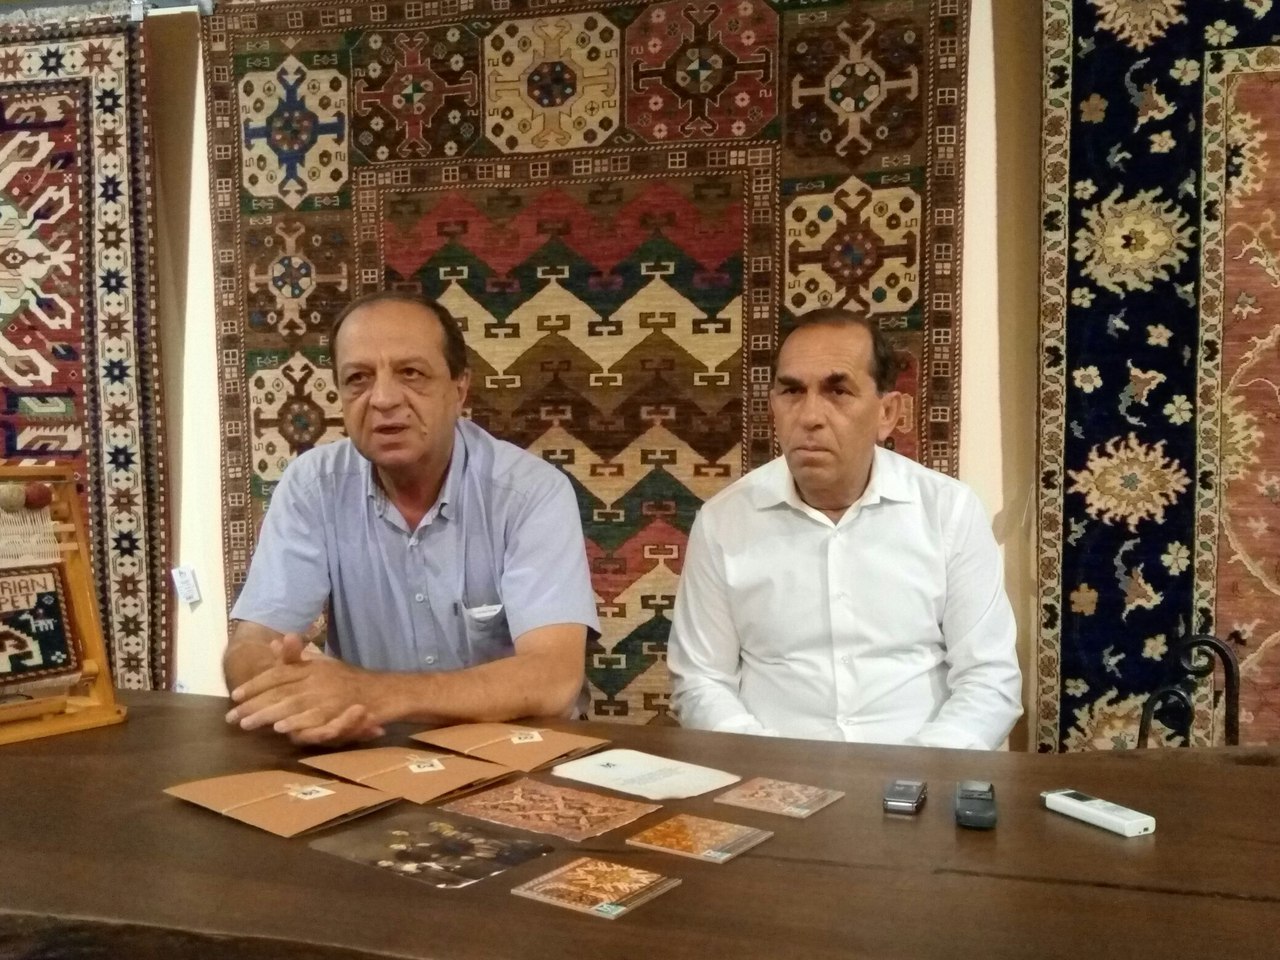 «Megeryan Carpet»-ը մտադիր է վերականգնել նախկինում Հայաստանի ողջ տարածքում գործող գորգագործական ֆաբրիկաները